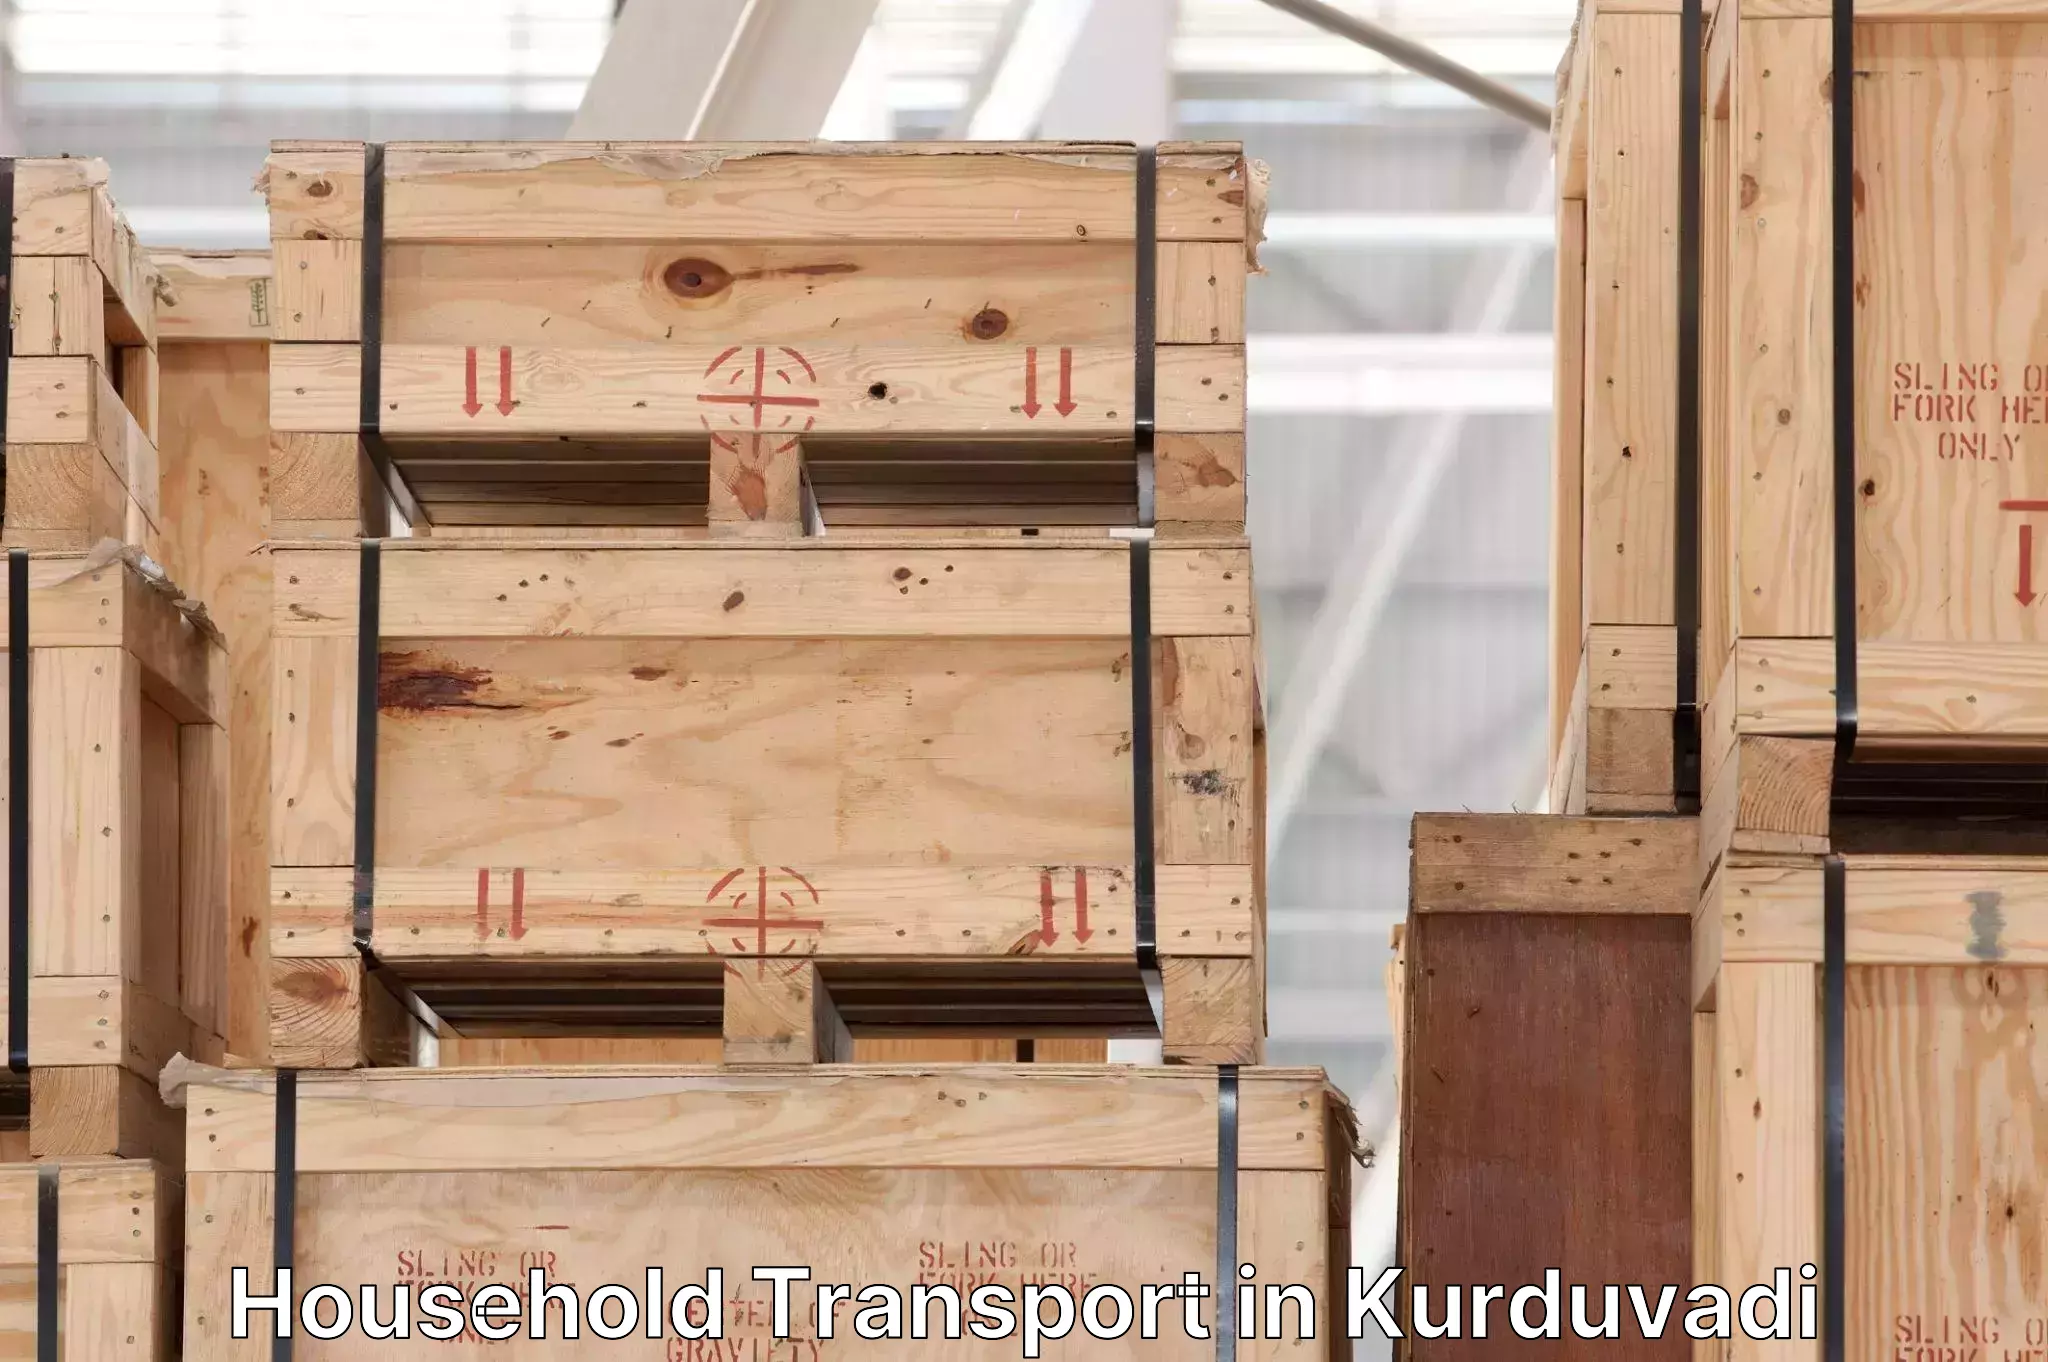 Efficient furniture transport in Kurduvadi